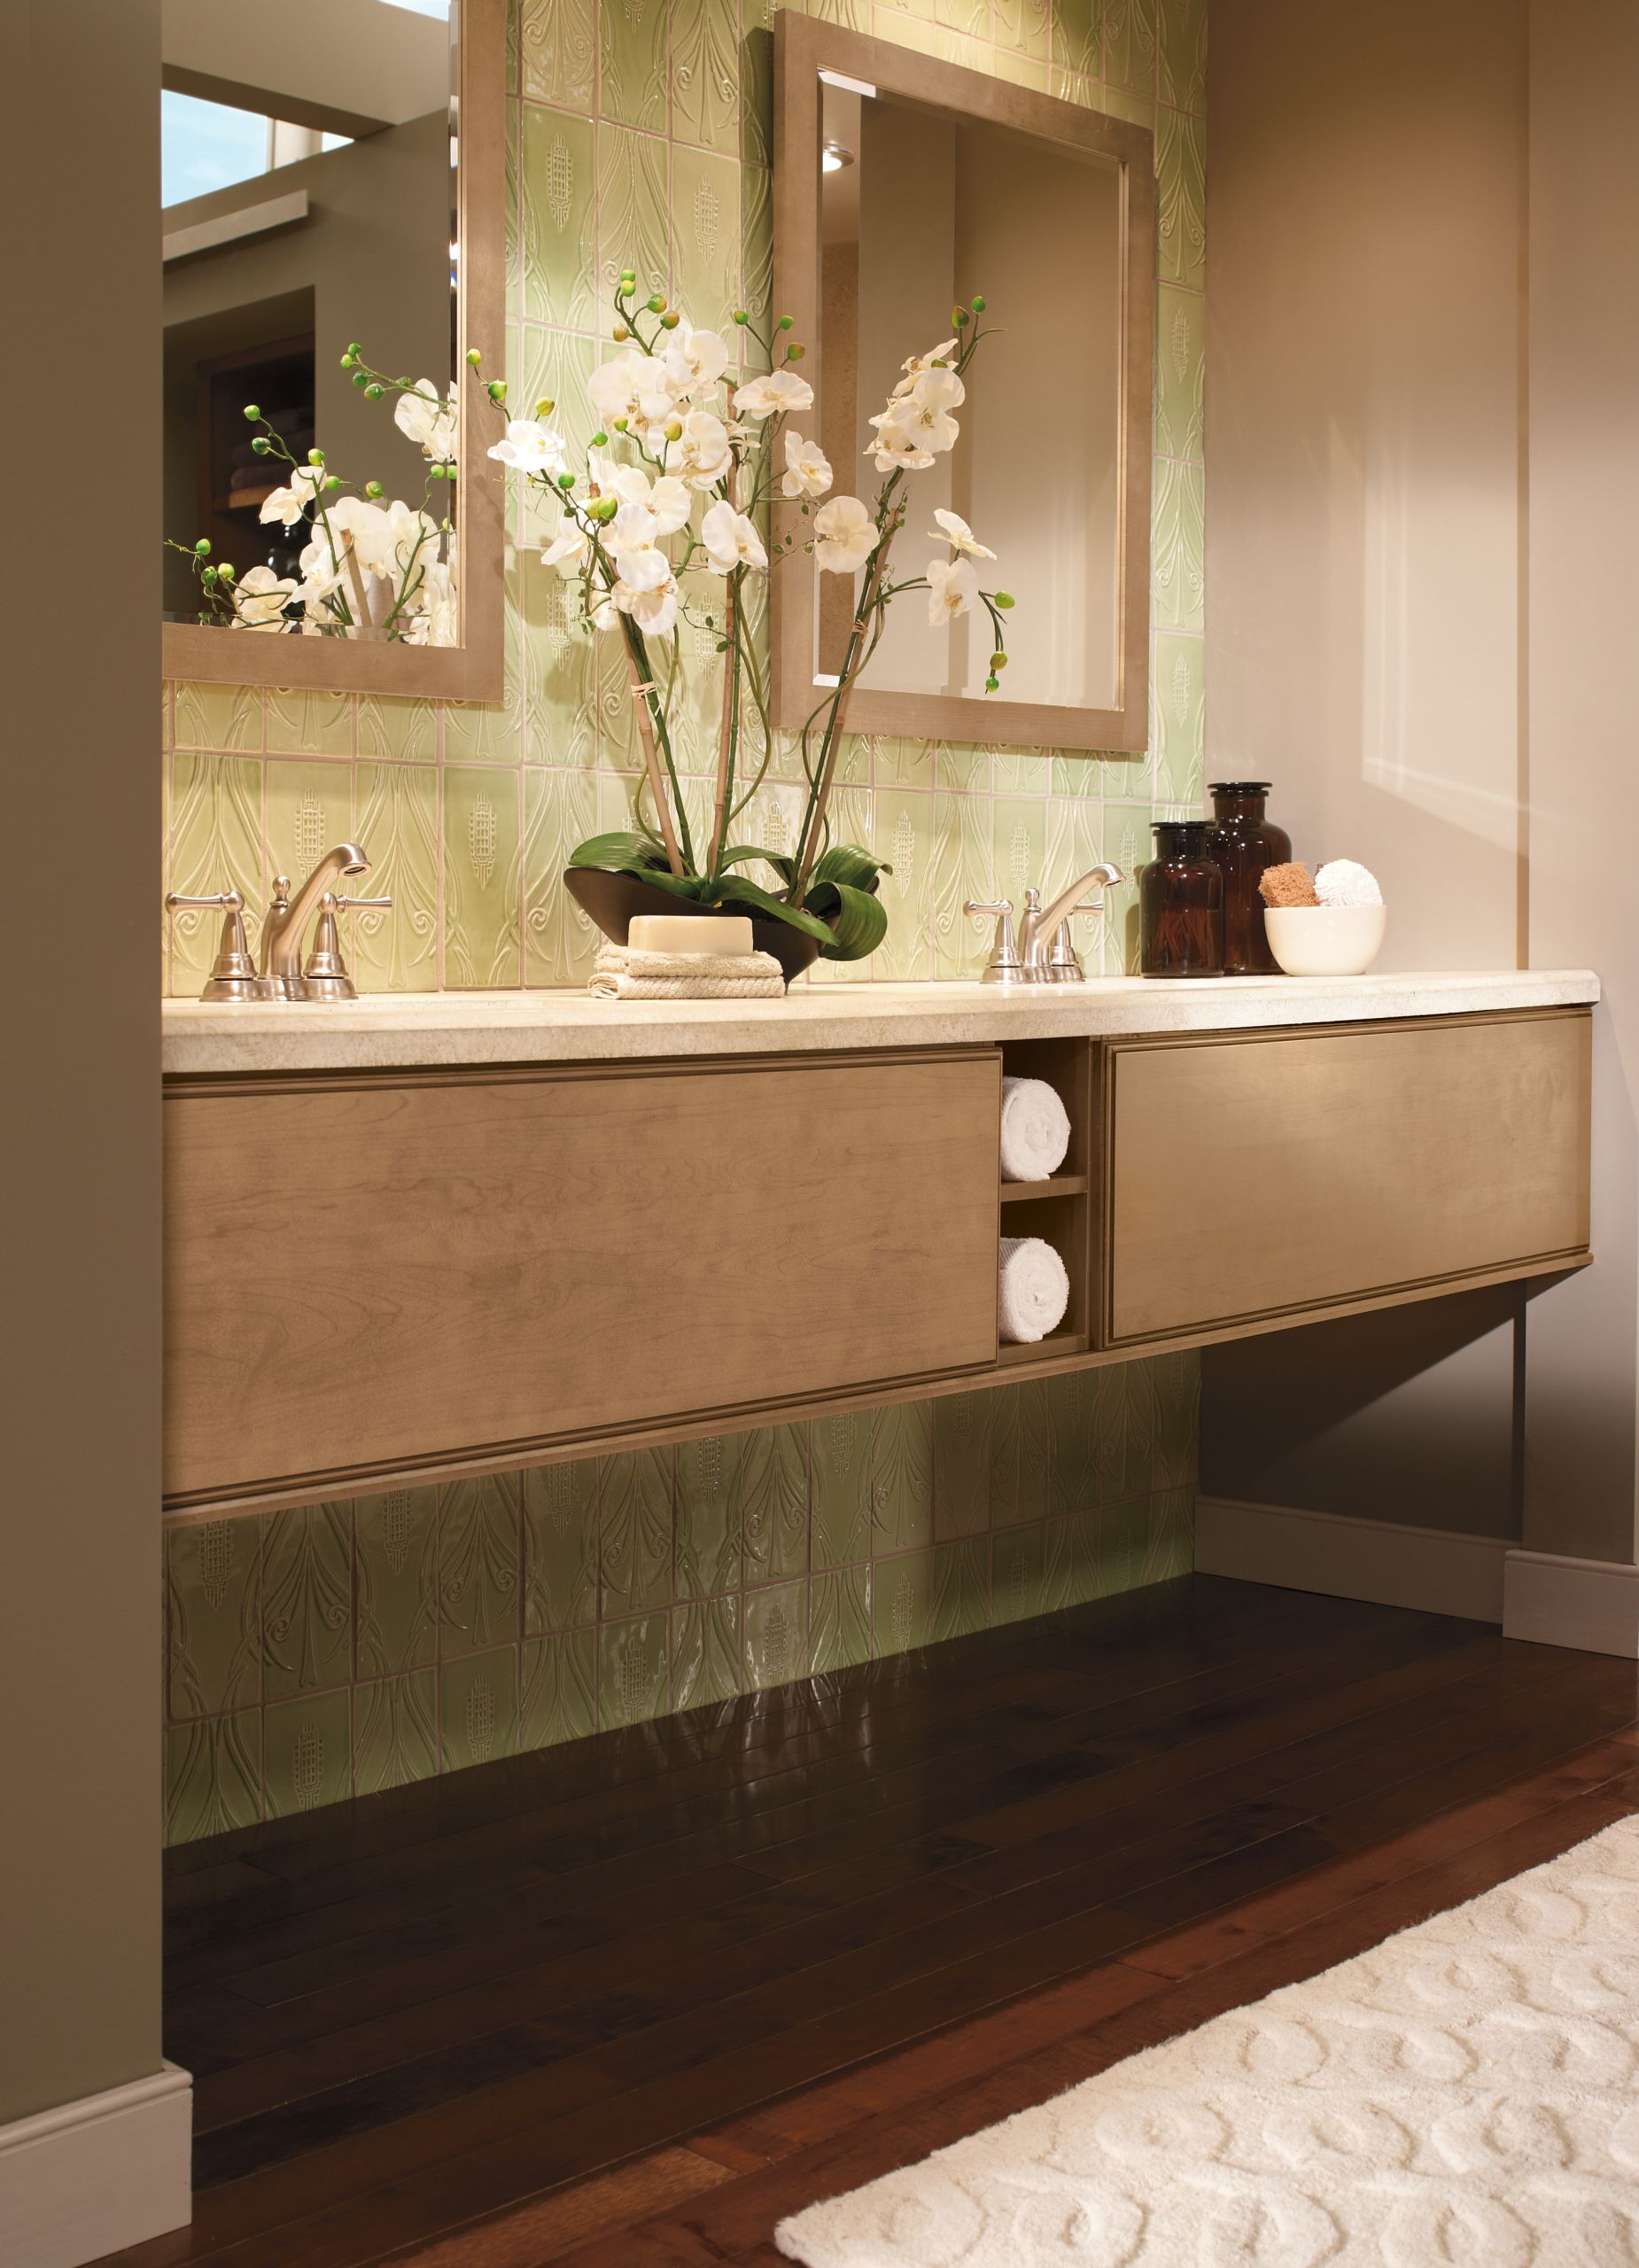 Pictures Of Bathroom Vanities
 Bathroom Design Ideas Top 5 Ideas